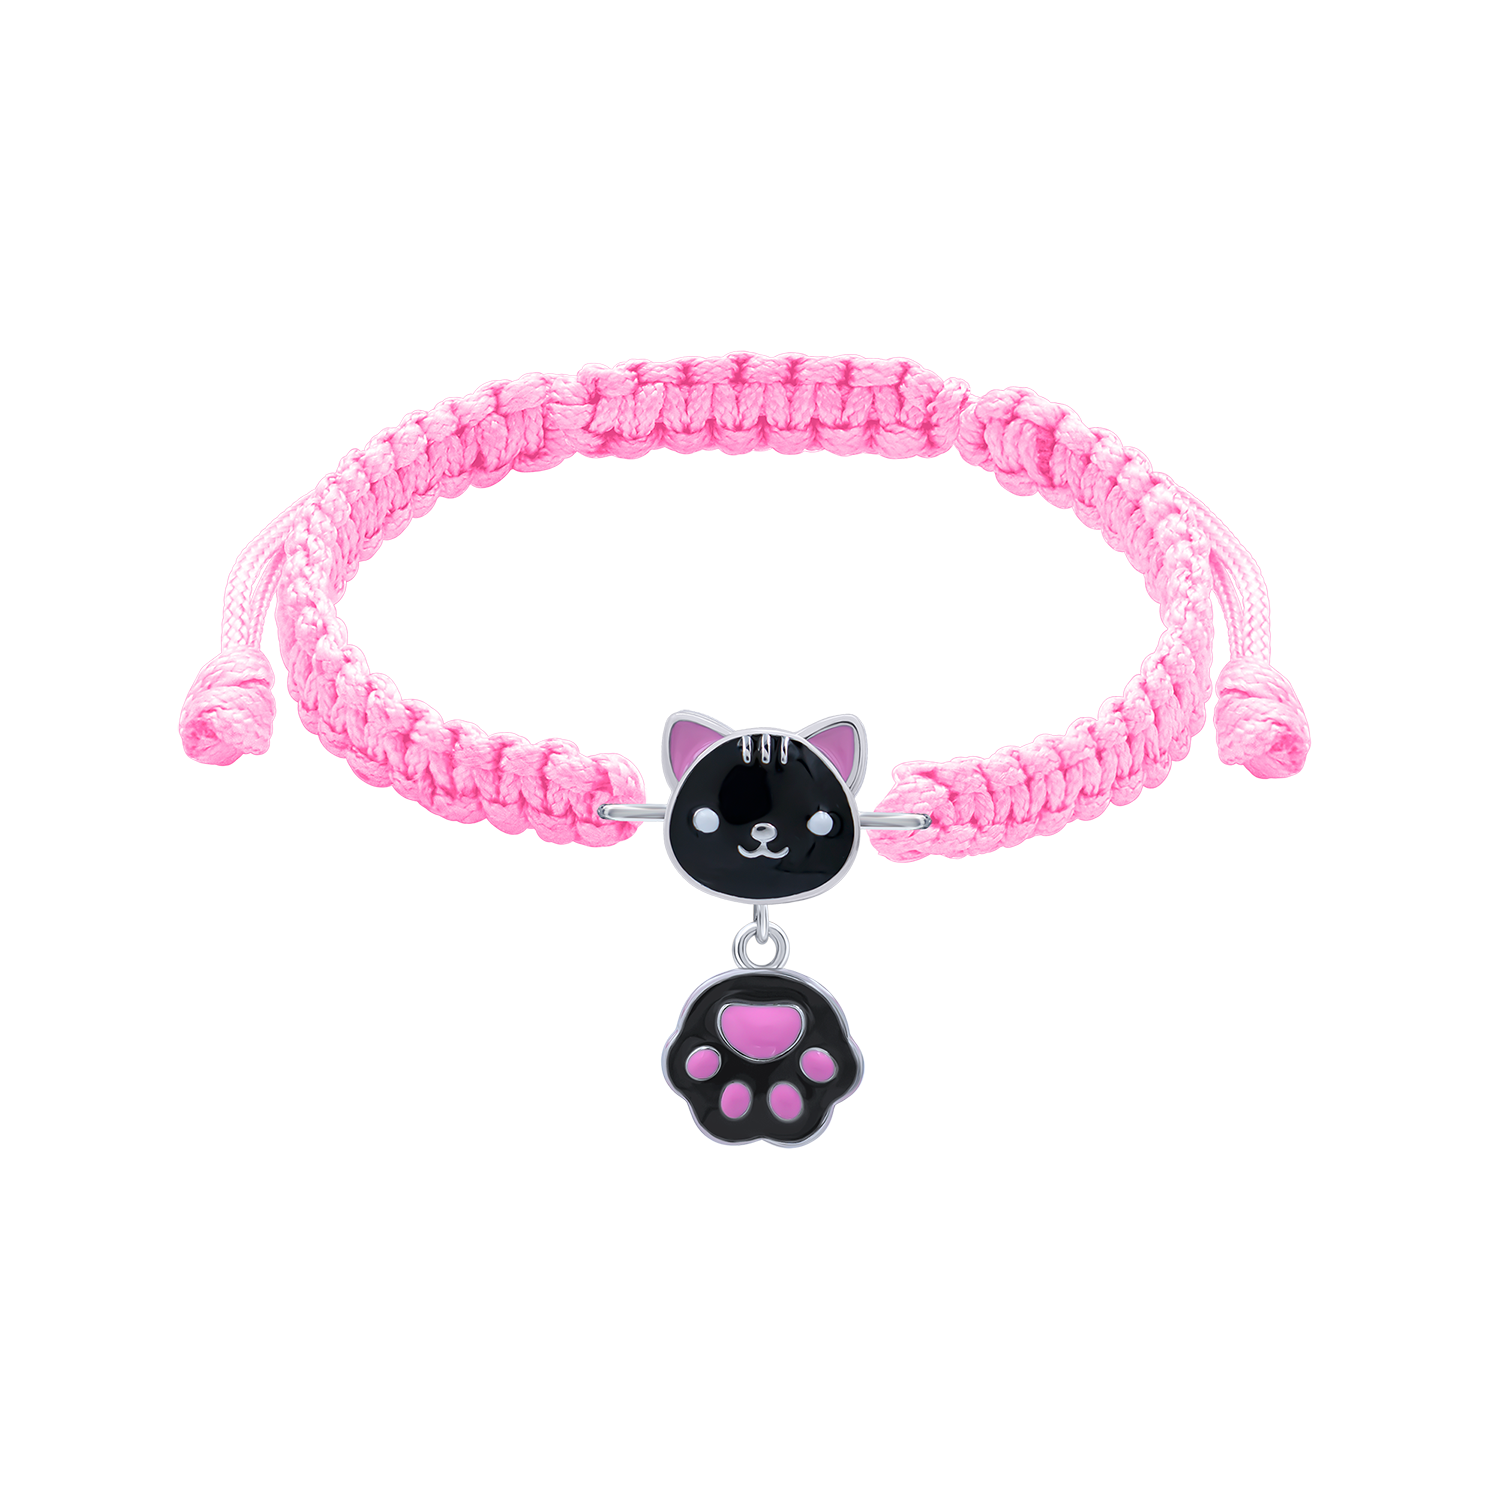 Braided bracelet Black Cat with a Paw